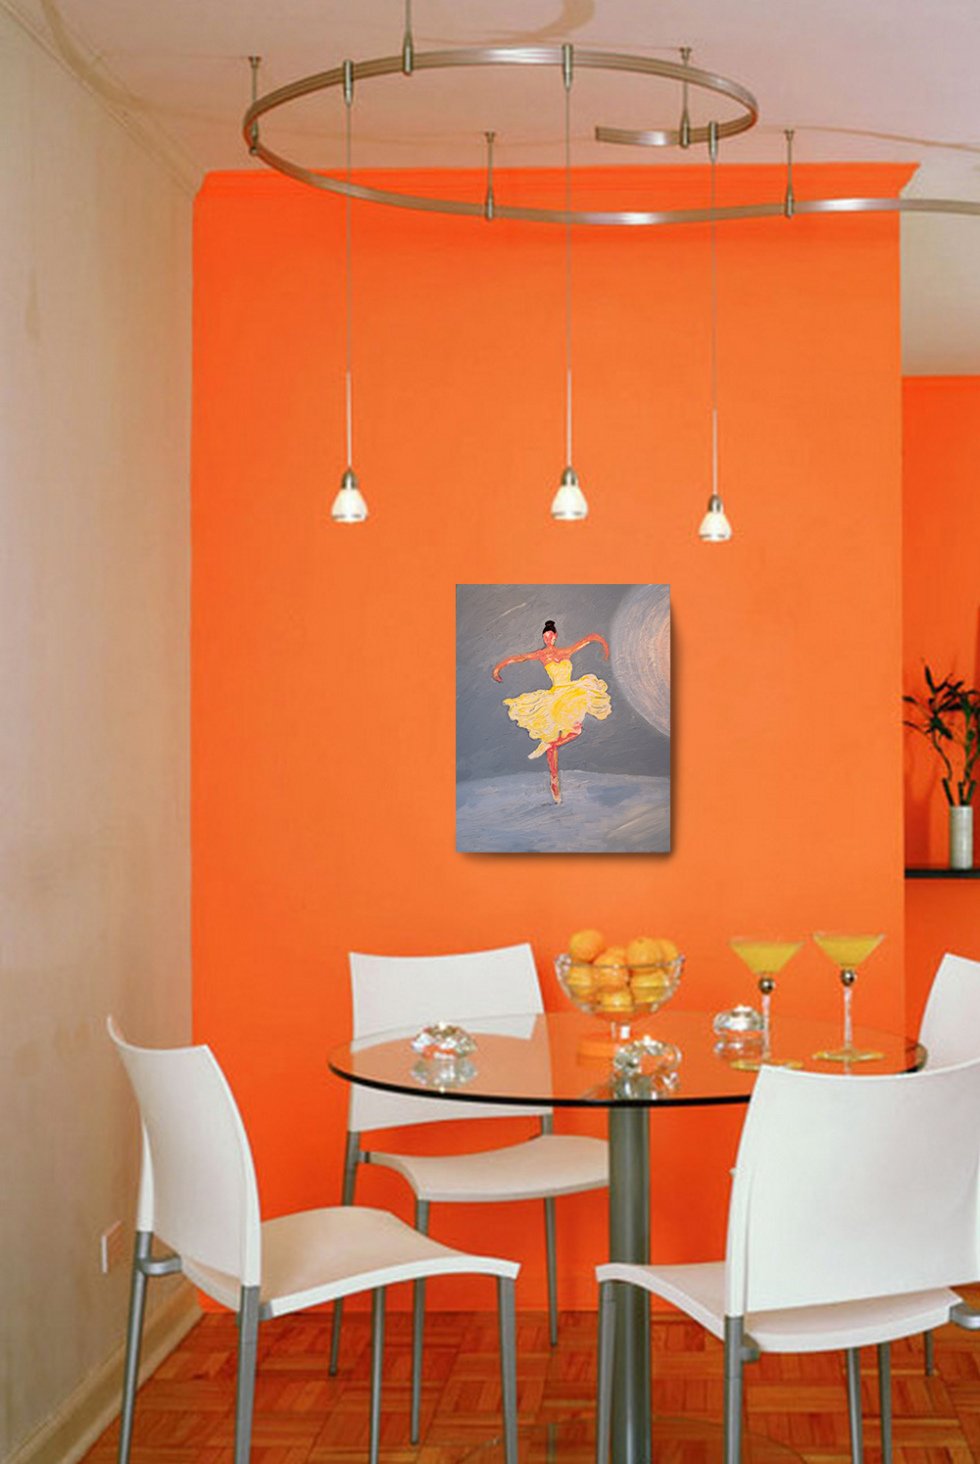 Апельсиновый цвет стен